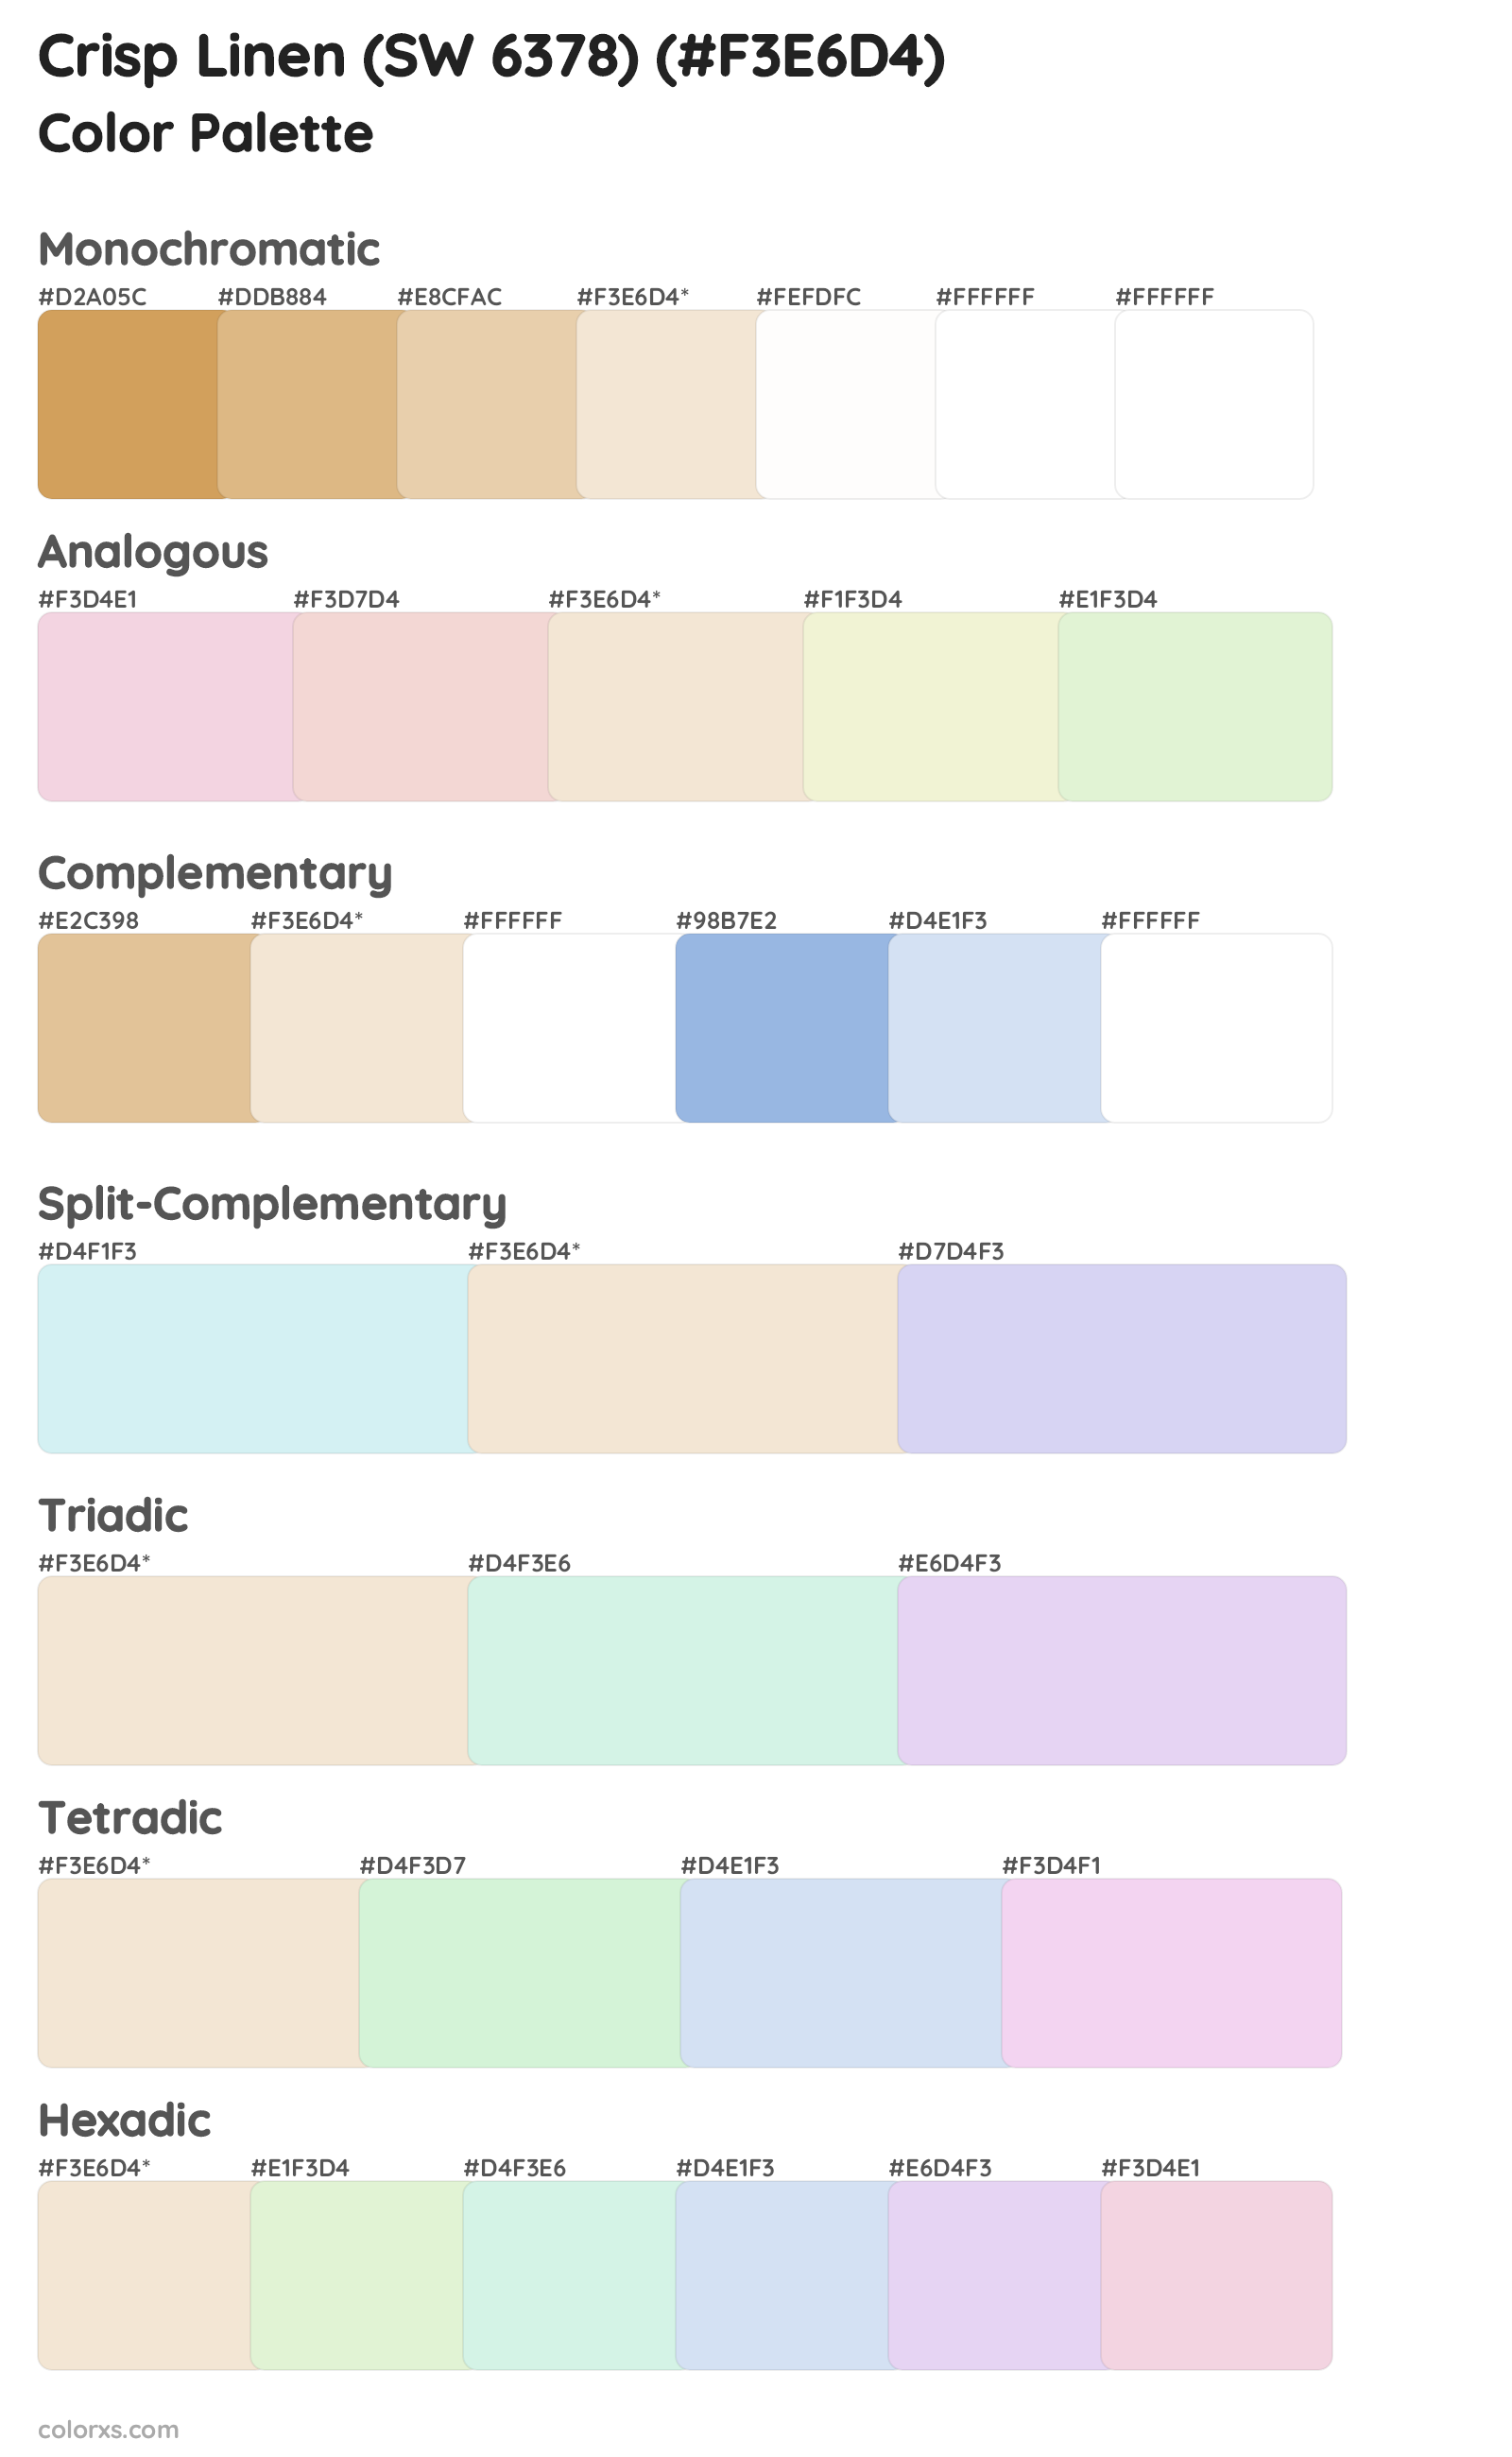 Crisp Linen (SW 6378) Color Scheme Palettes